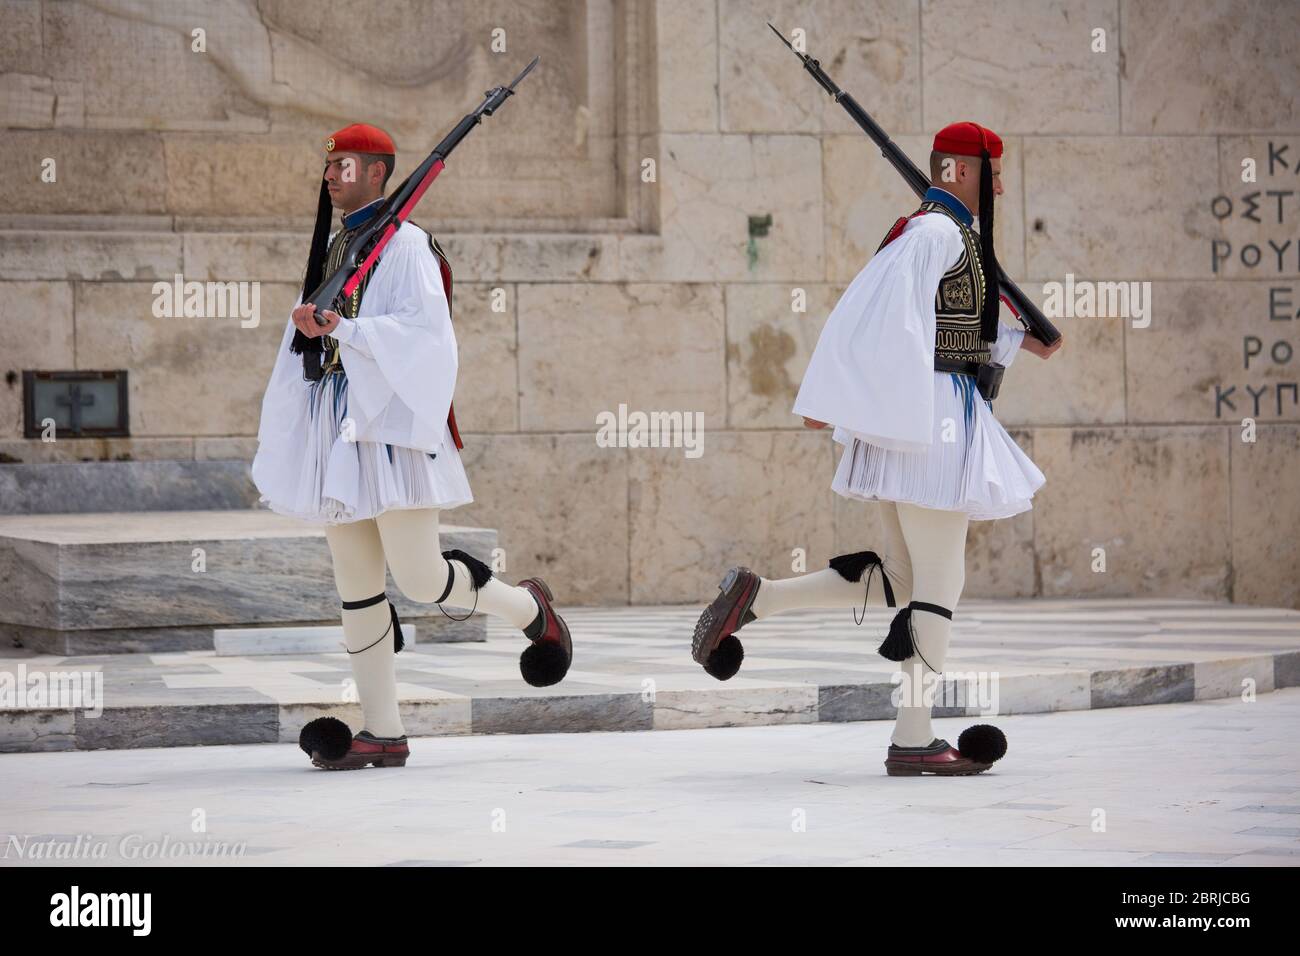 Atene, Grecia - 01 maggio 2019: Soldati greci Evzones vestiti in uniformi insolite tradizionali, si riferisce ai membri della Guardia Presidenziale, un eli Foto Stock